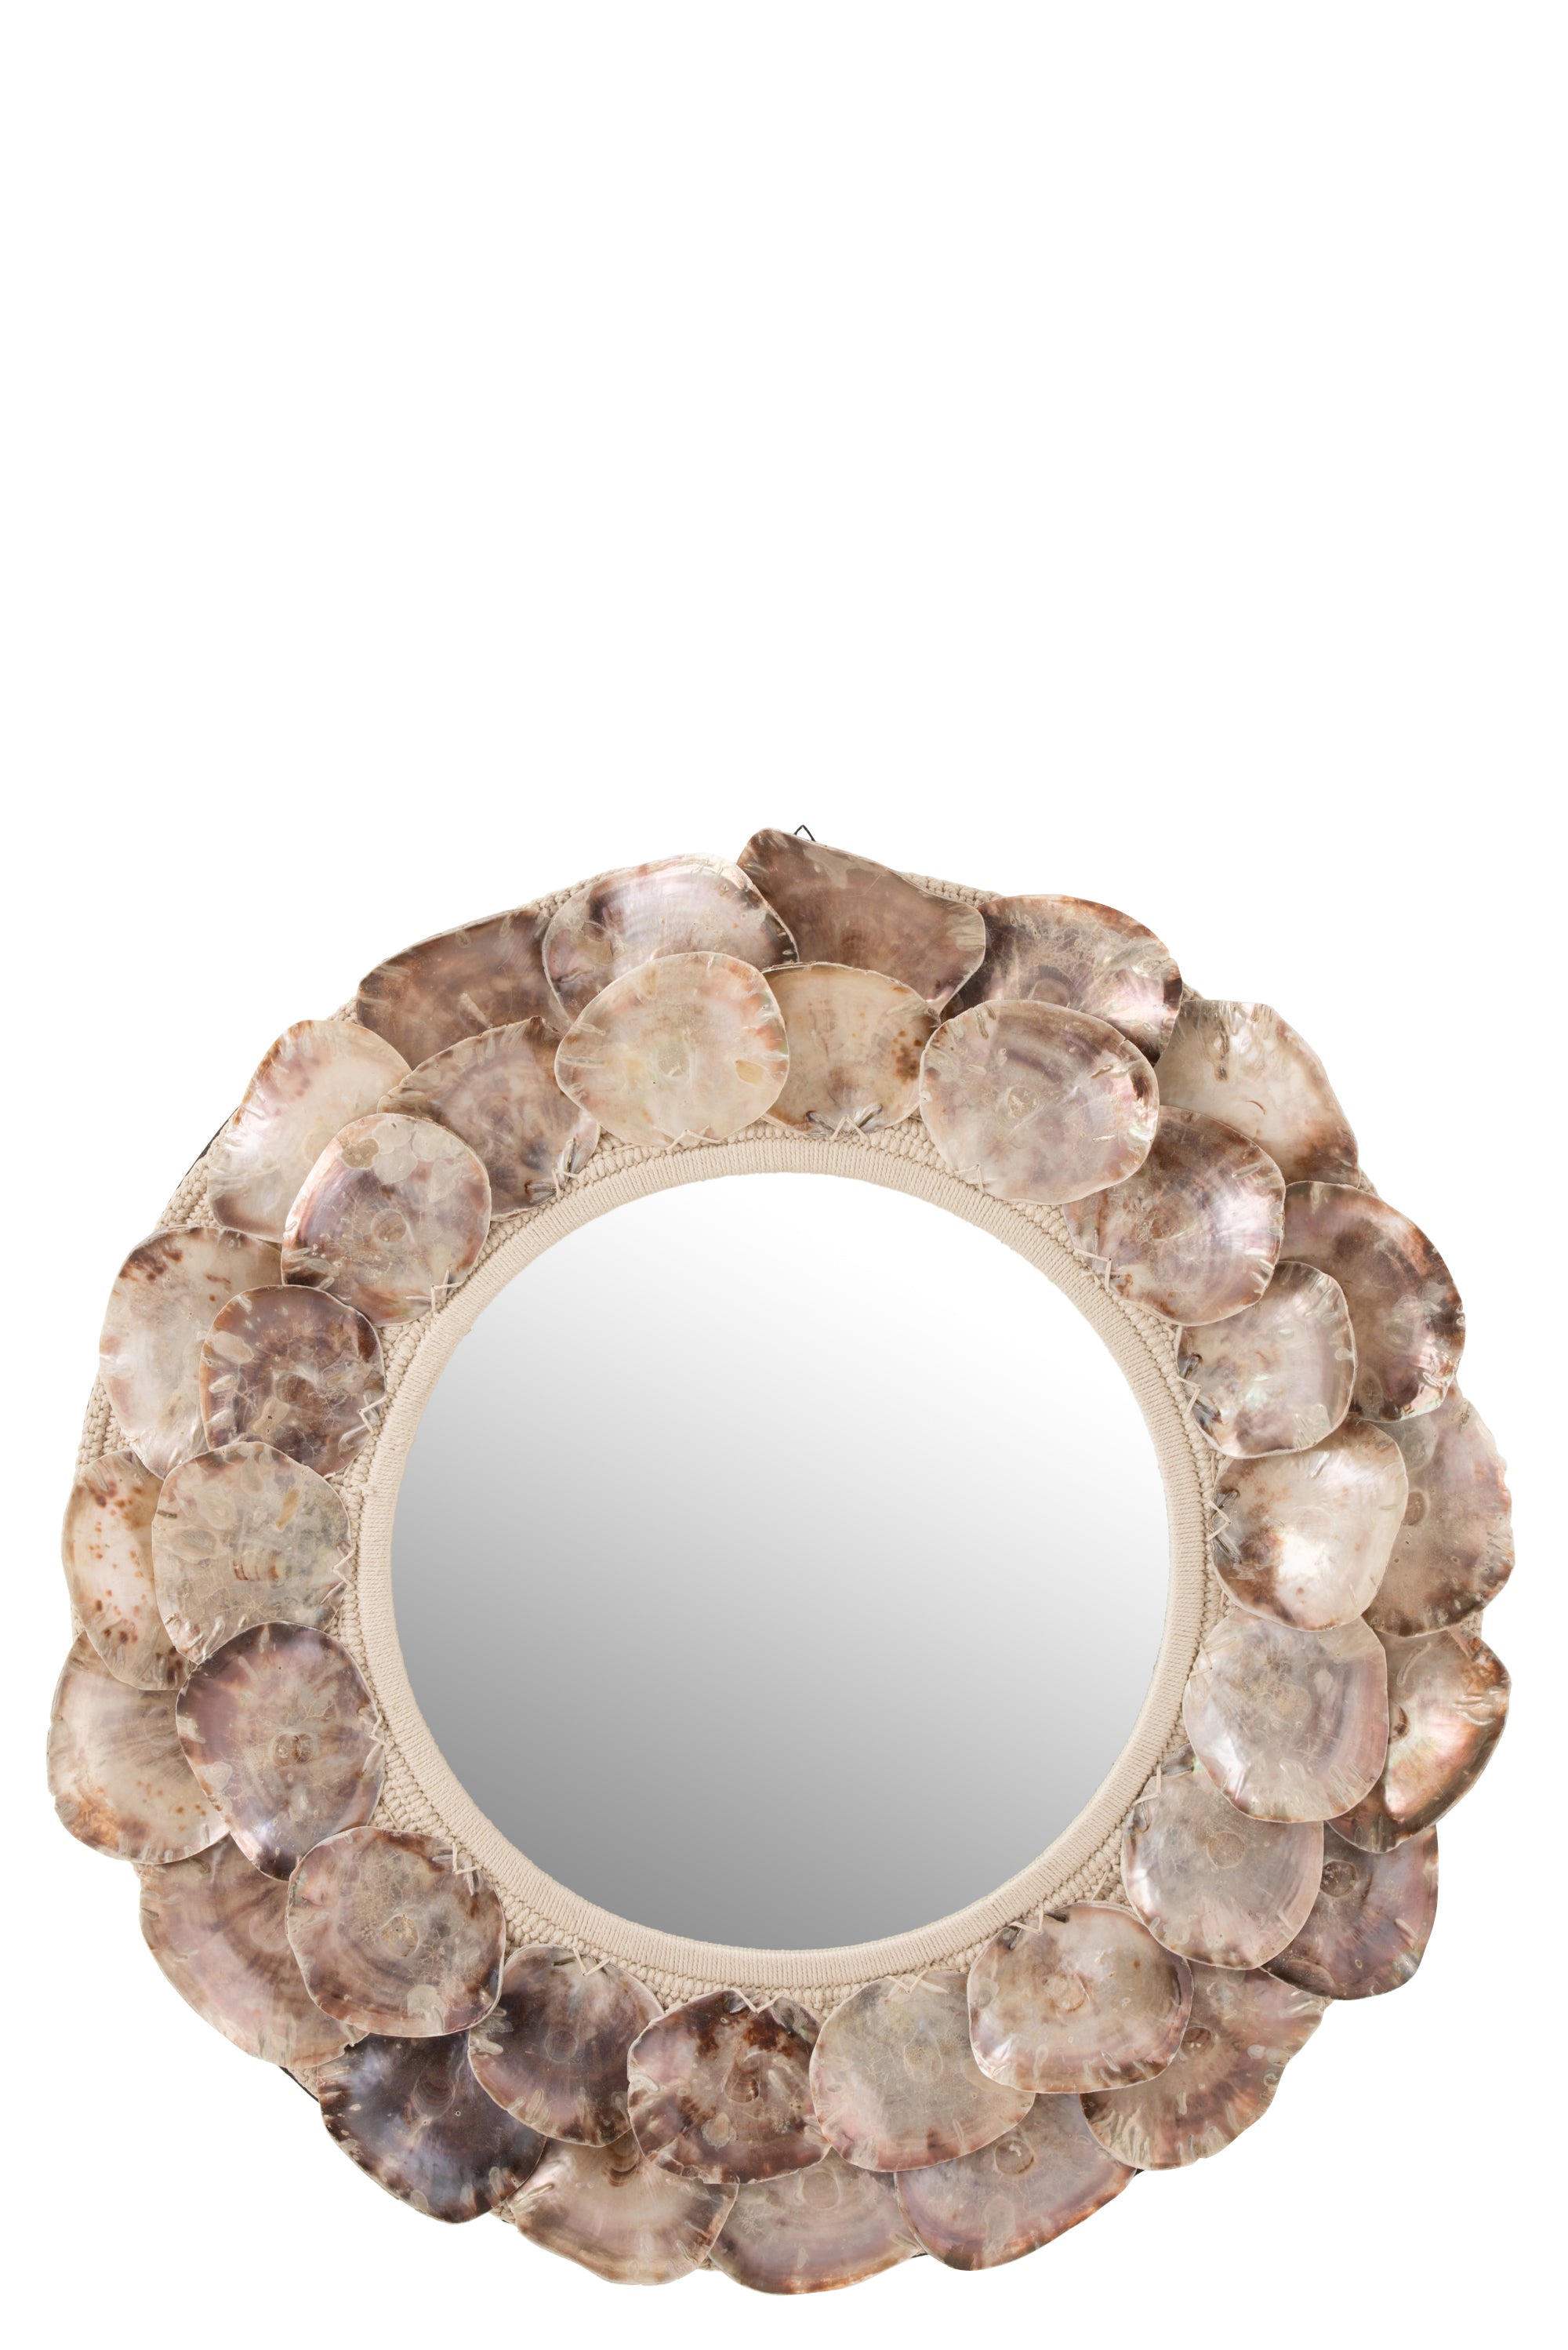 Großer, runder Spiegel, eingefasst von zwei Reihen fast runden, Perlmutt schimmernden Muscheln